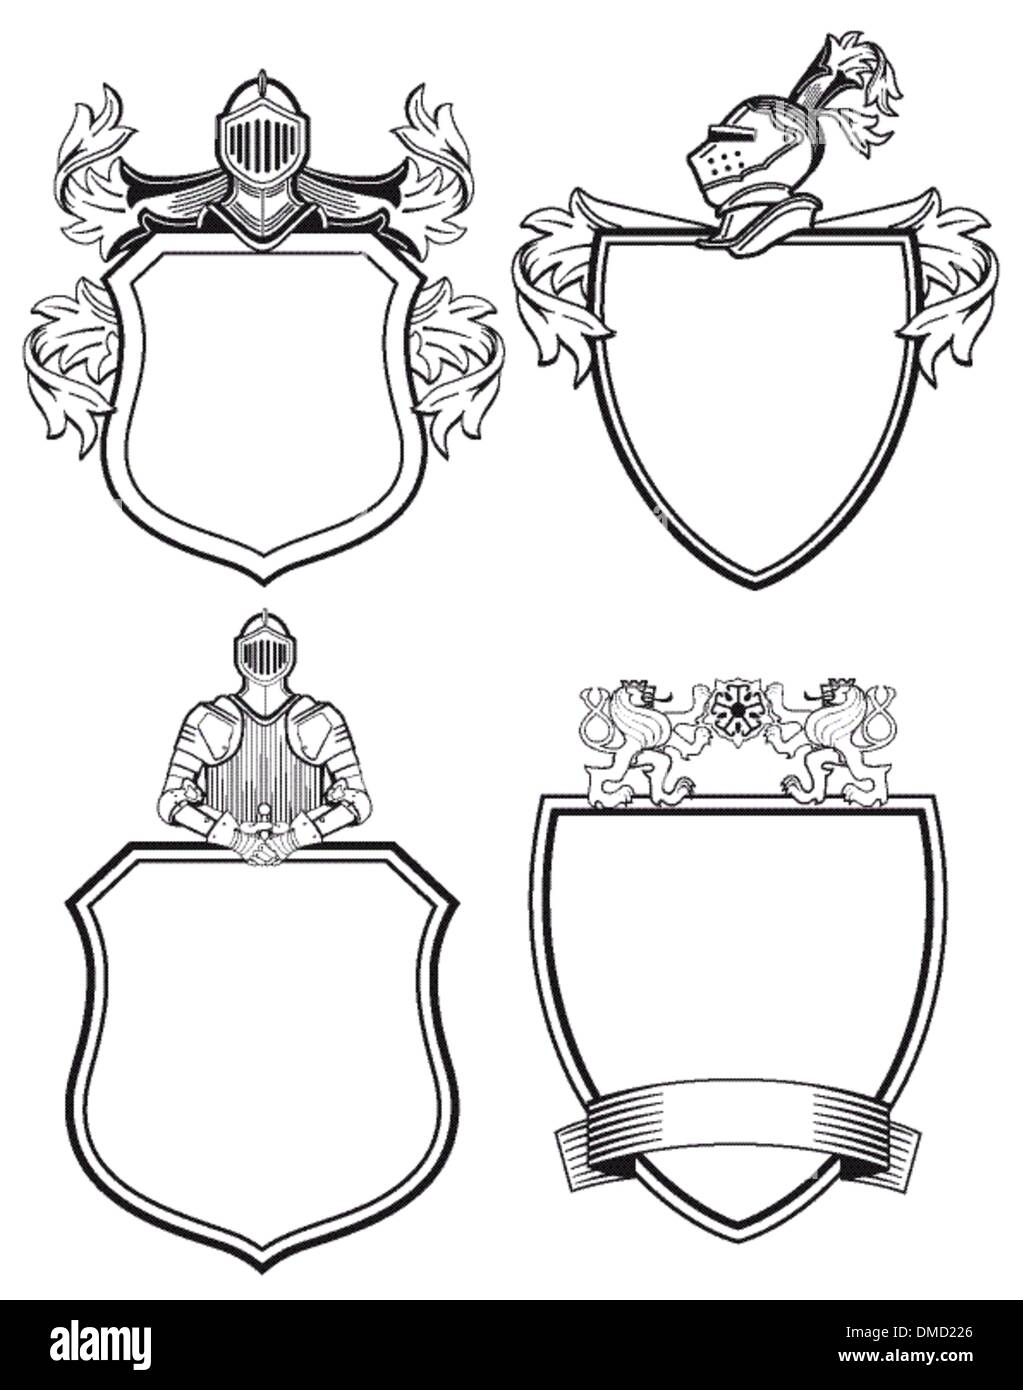 Knight shields et crêtes Illustration de Vecteur